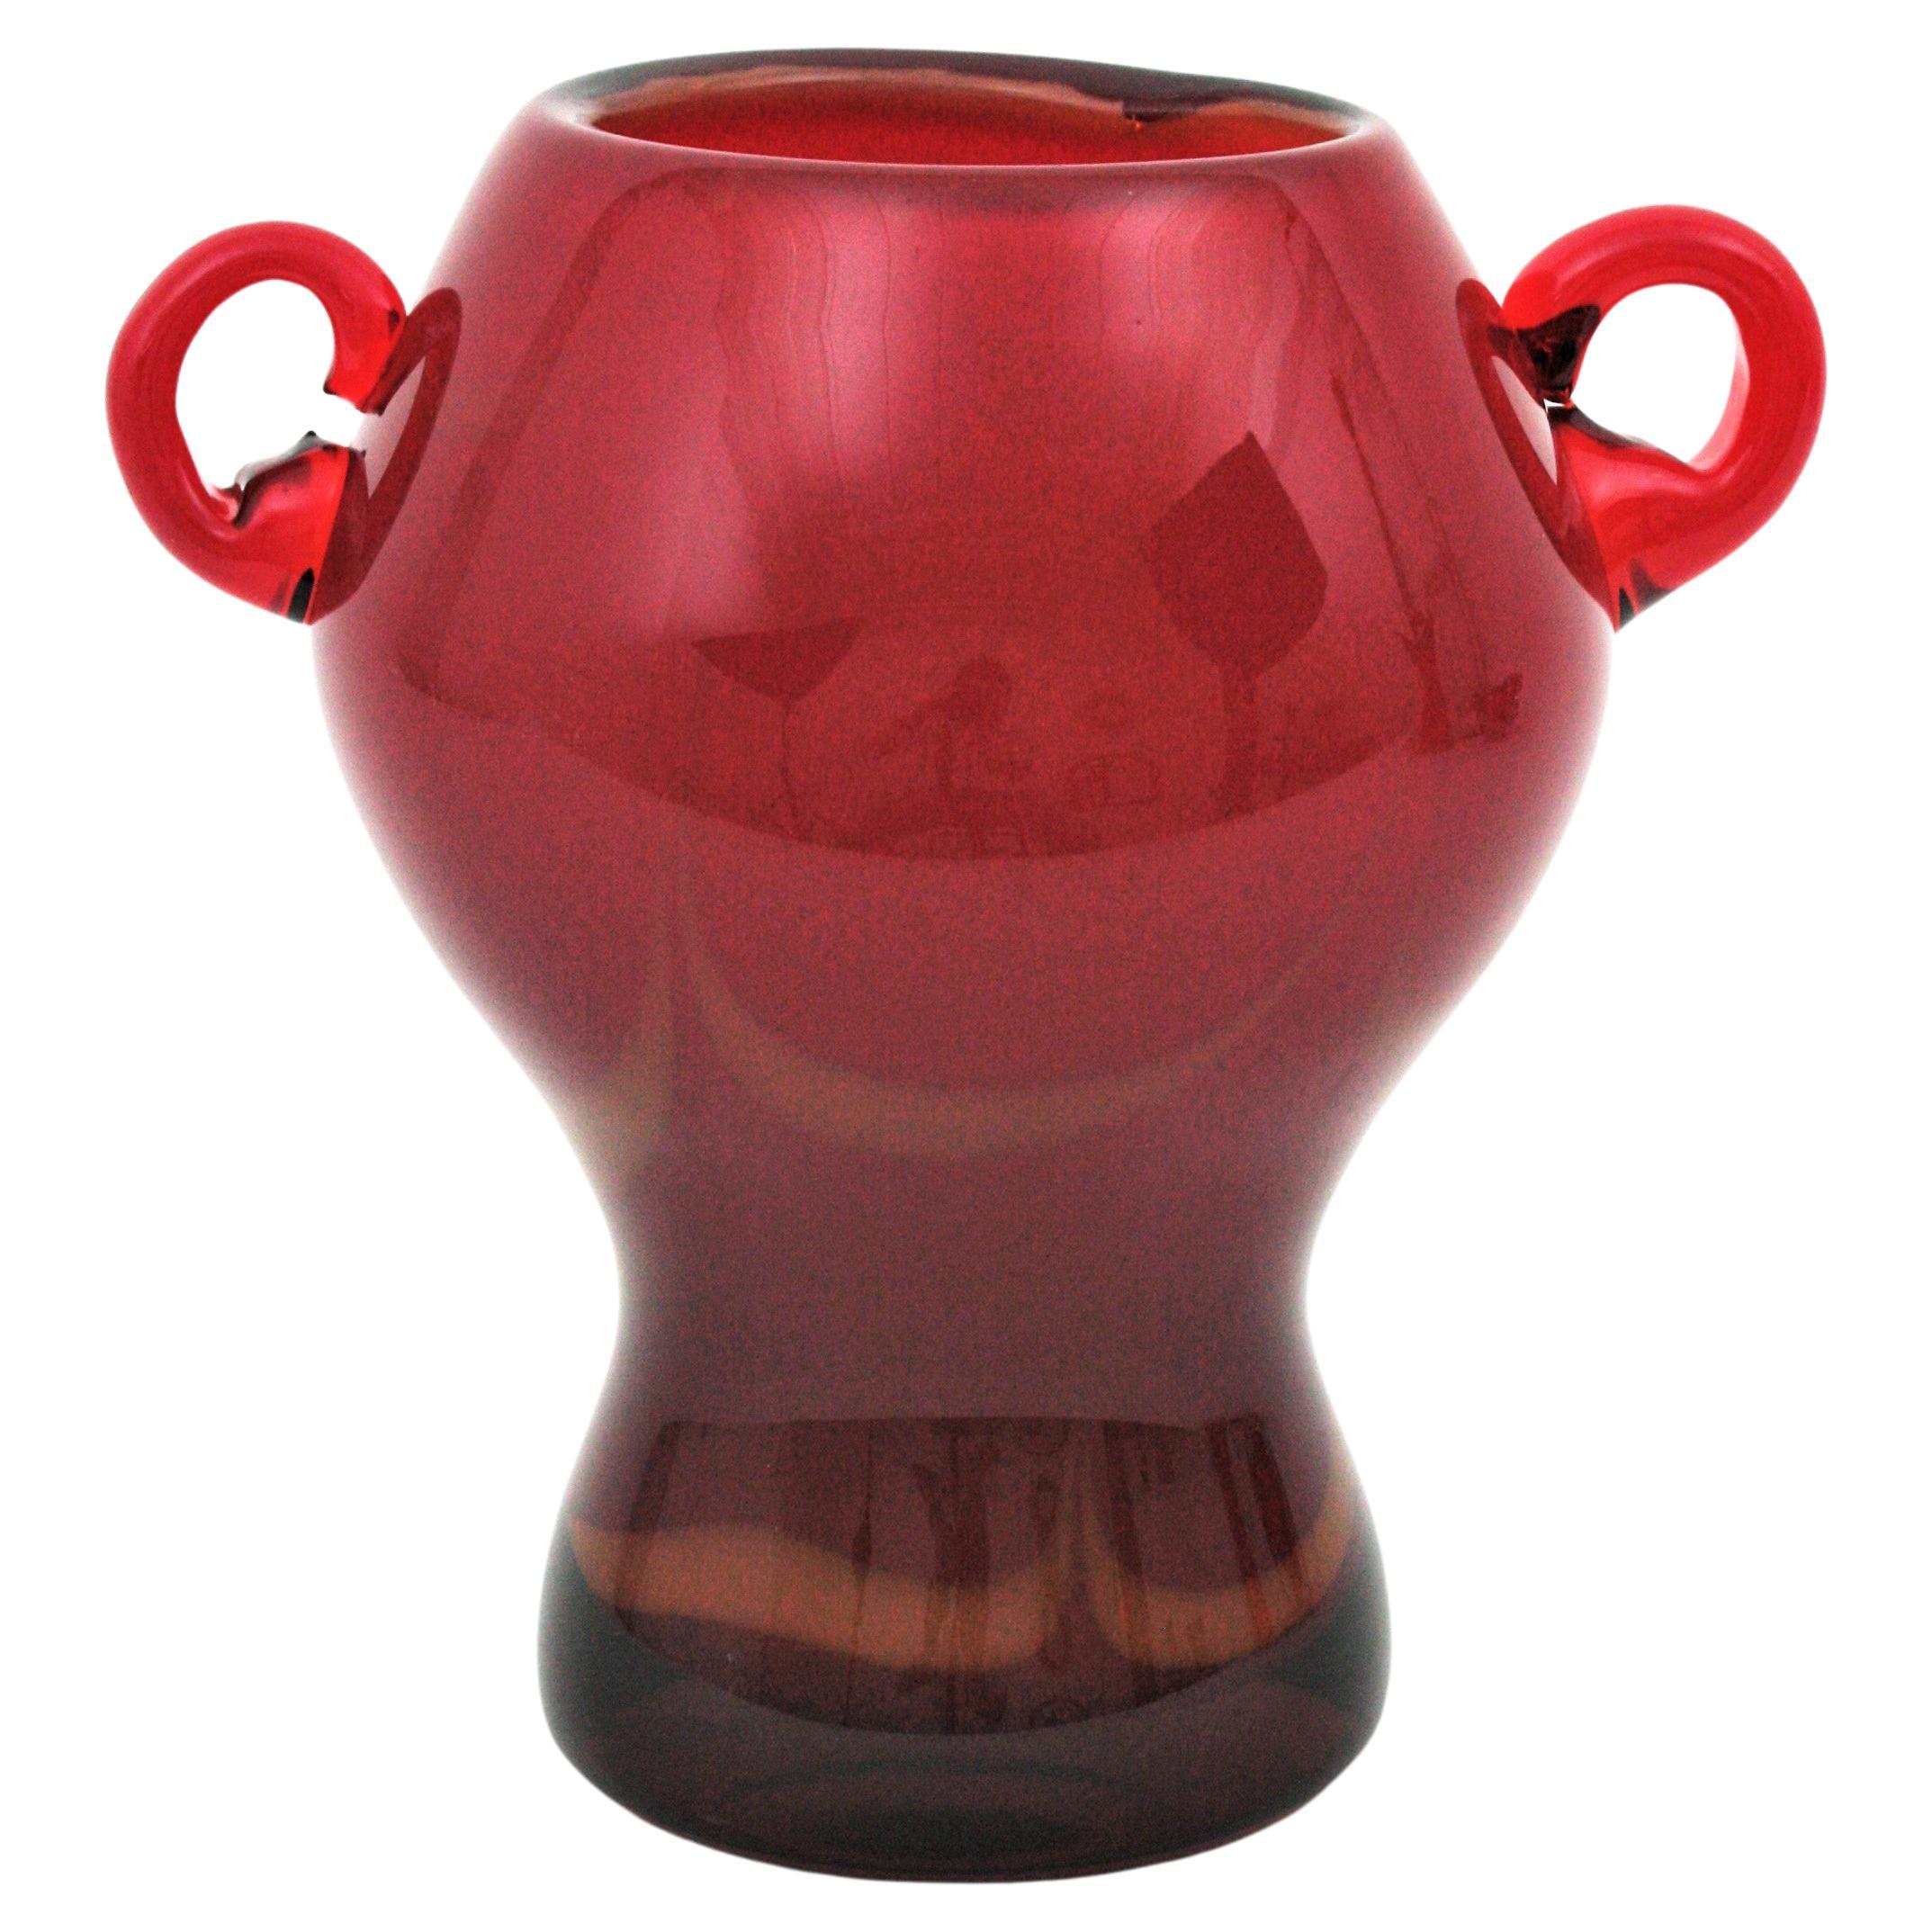 Rote Vase aus mundgeblasenem Murano-Glas mit aufgesetzten Henkeln. Archimede Seguso und Seguso Vetri d'Arte zugeschrieben, Italien, 1950er Jahre.
Diese auffällige Vase in Form eines Murano-Glases ist aus rotem Glas gefertigt und mit Toffee-Akzenten